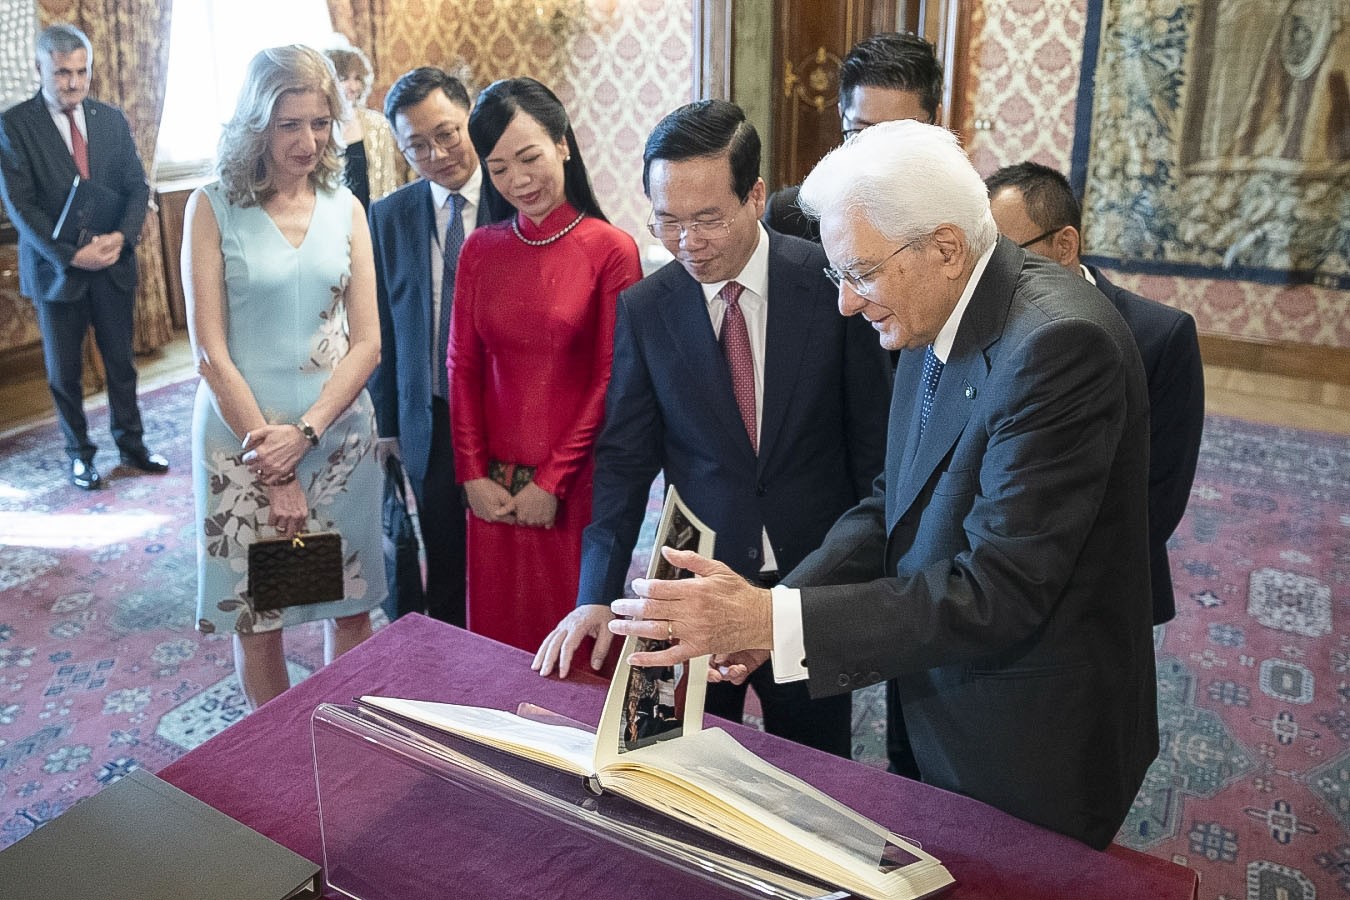 Italian President hosts farewell ceremony for President Vo Van Thuong